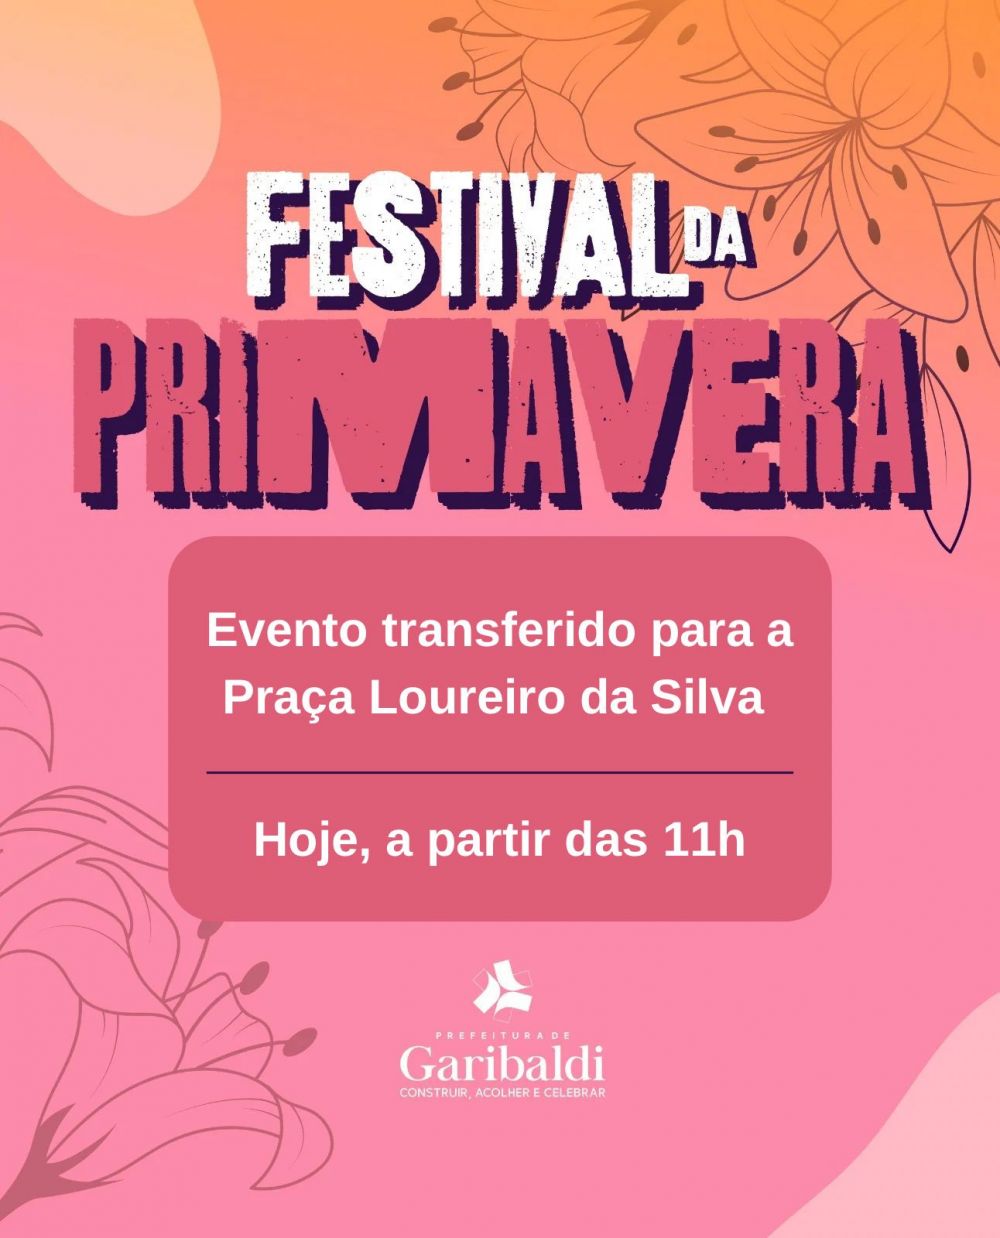 Festival da Primavera será na Praça Loureiro da Silva